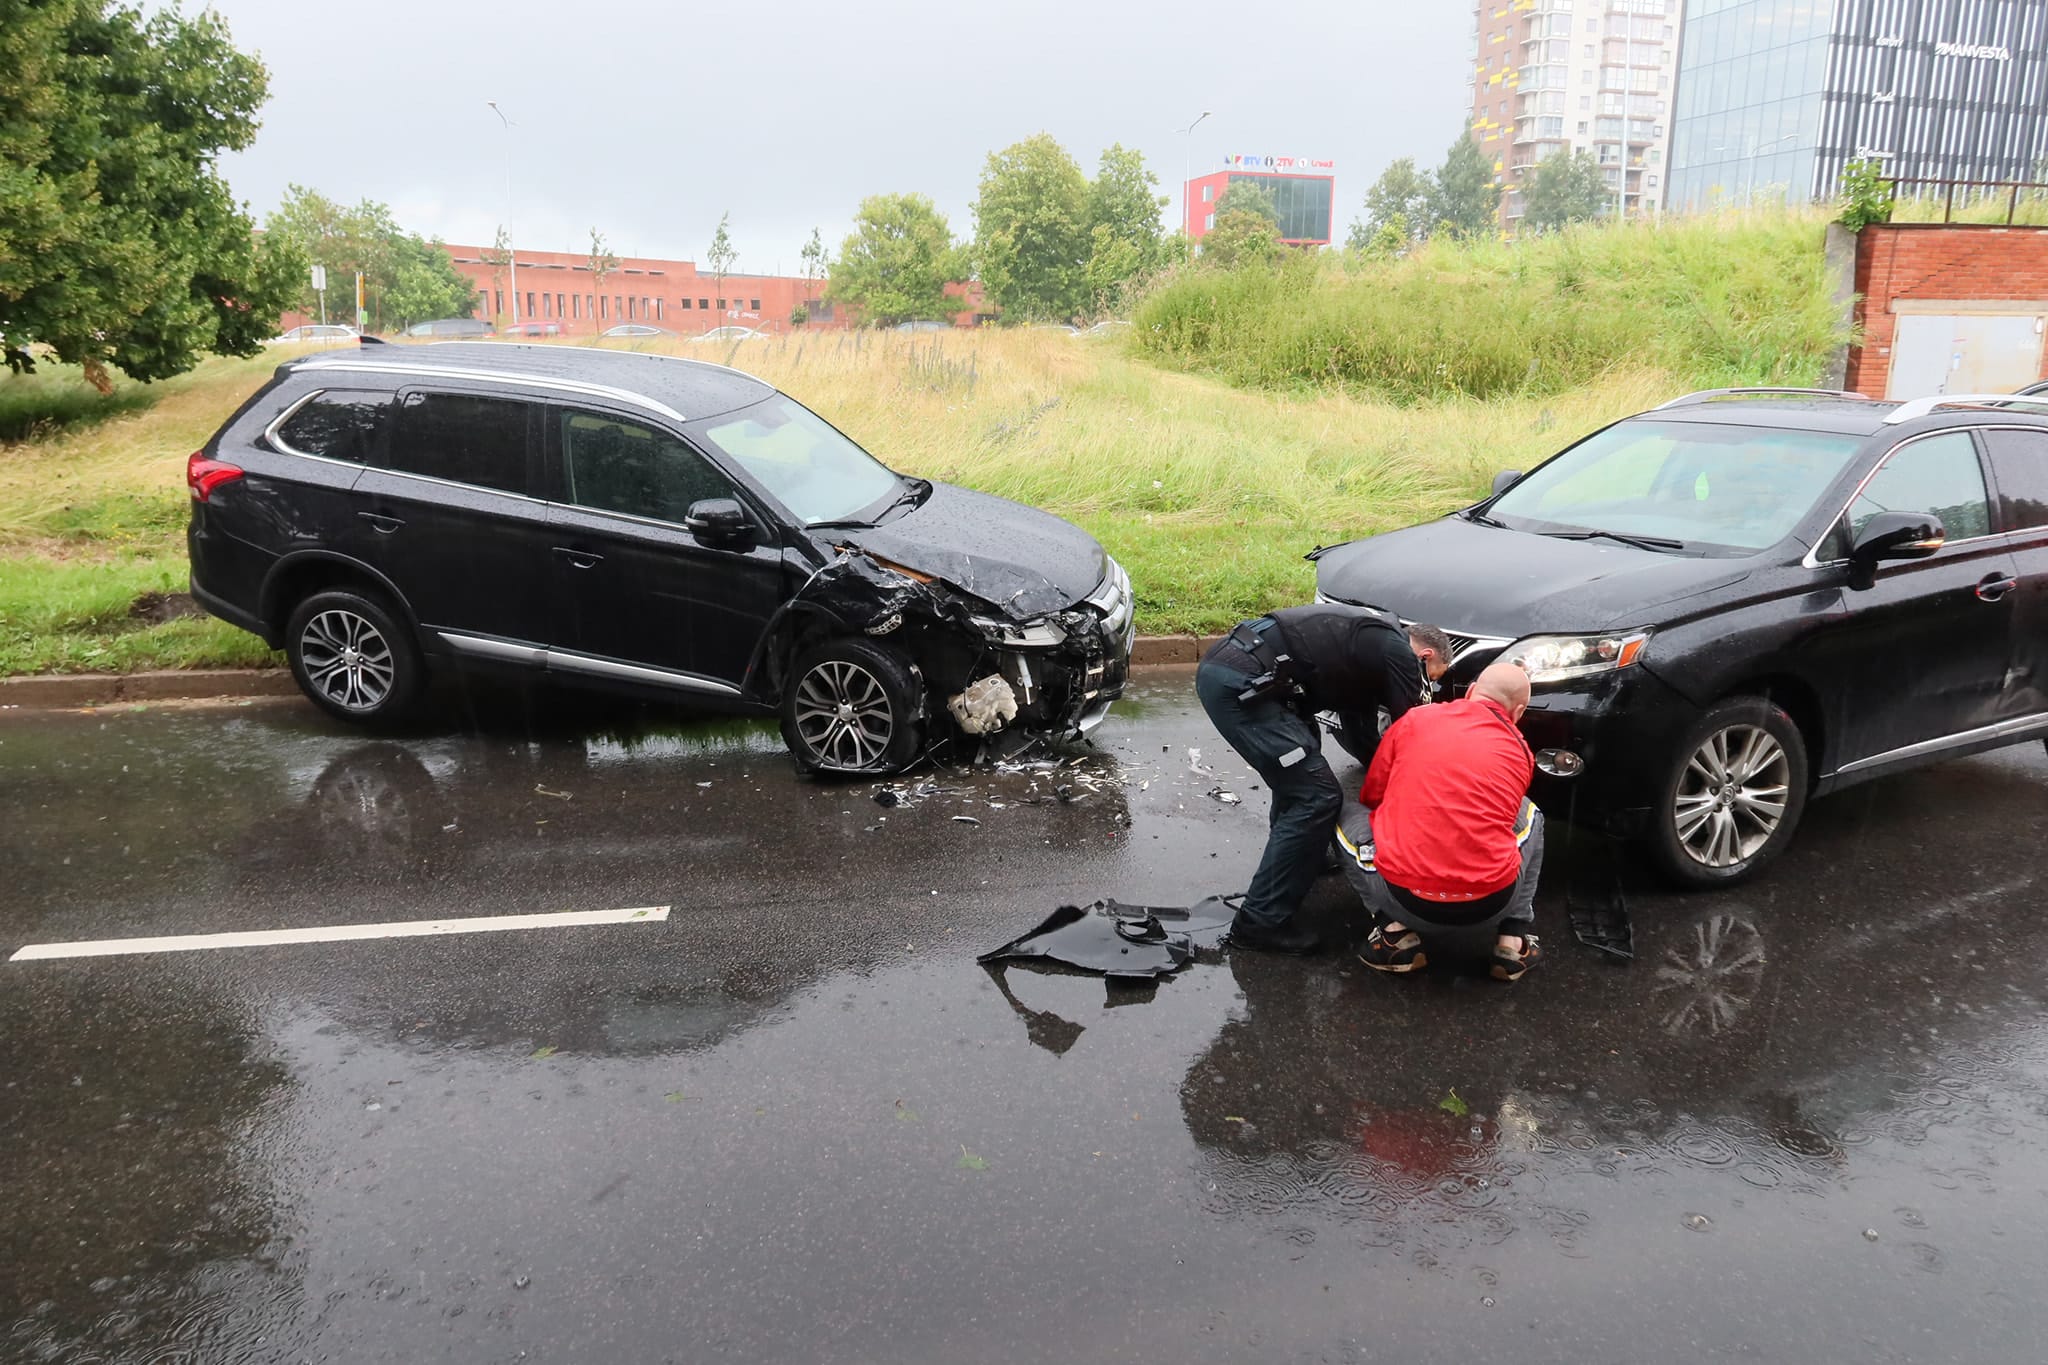 Neblaivaus „Mitsubishi“ vairuotojo siautėjimas Vilniuje: apgadinti trys automobiliai ir sužeista vairuotoja